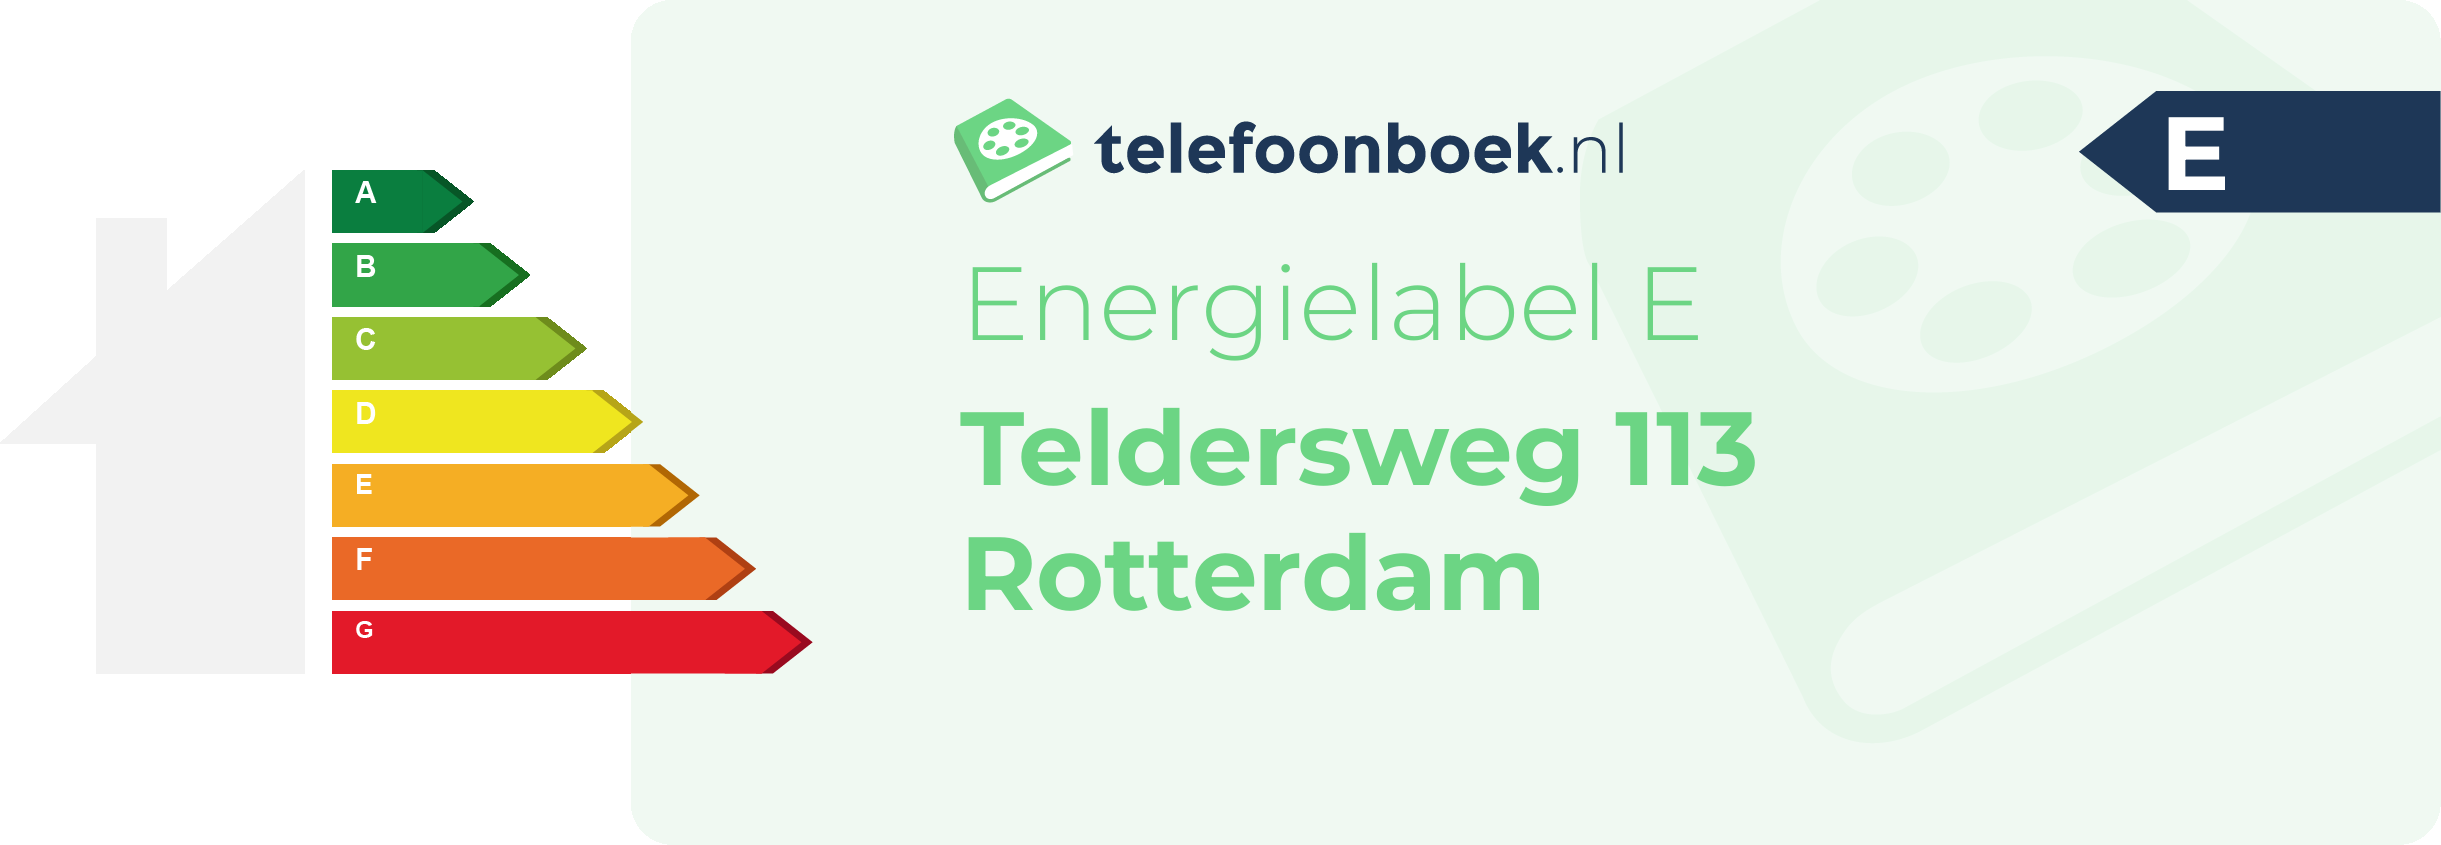 Energielabel Teldersweg 113 Rotterdam